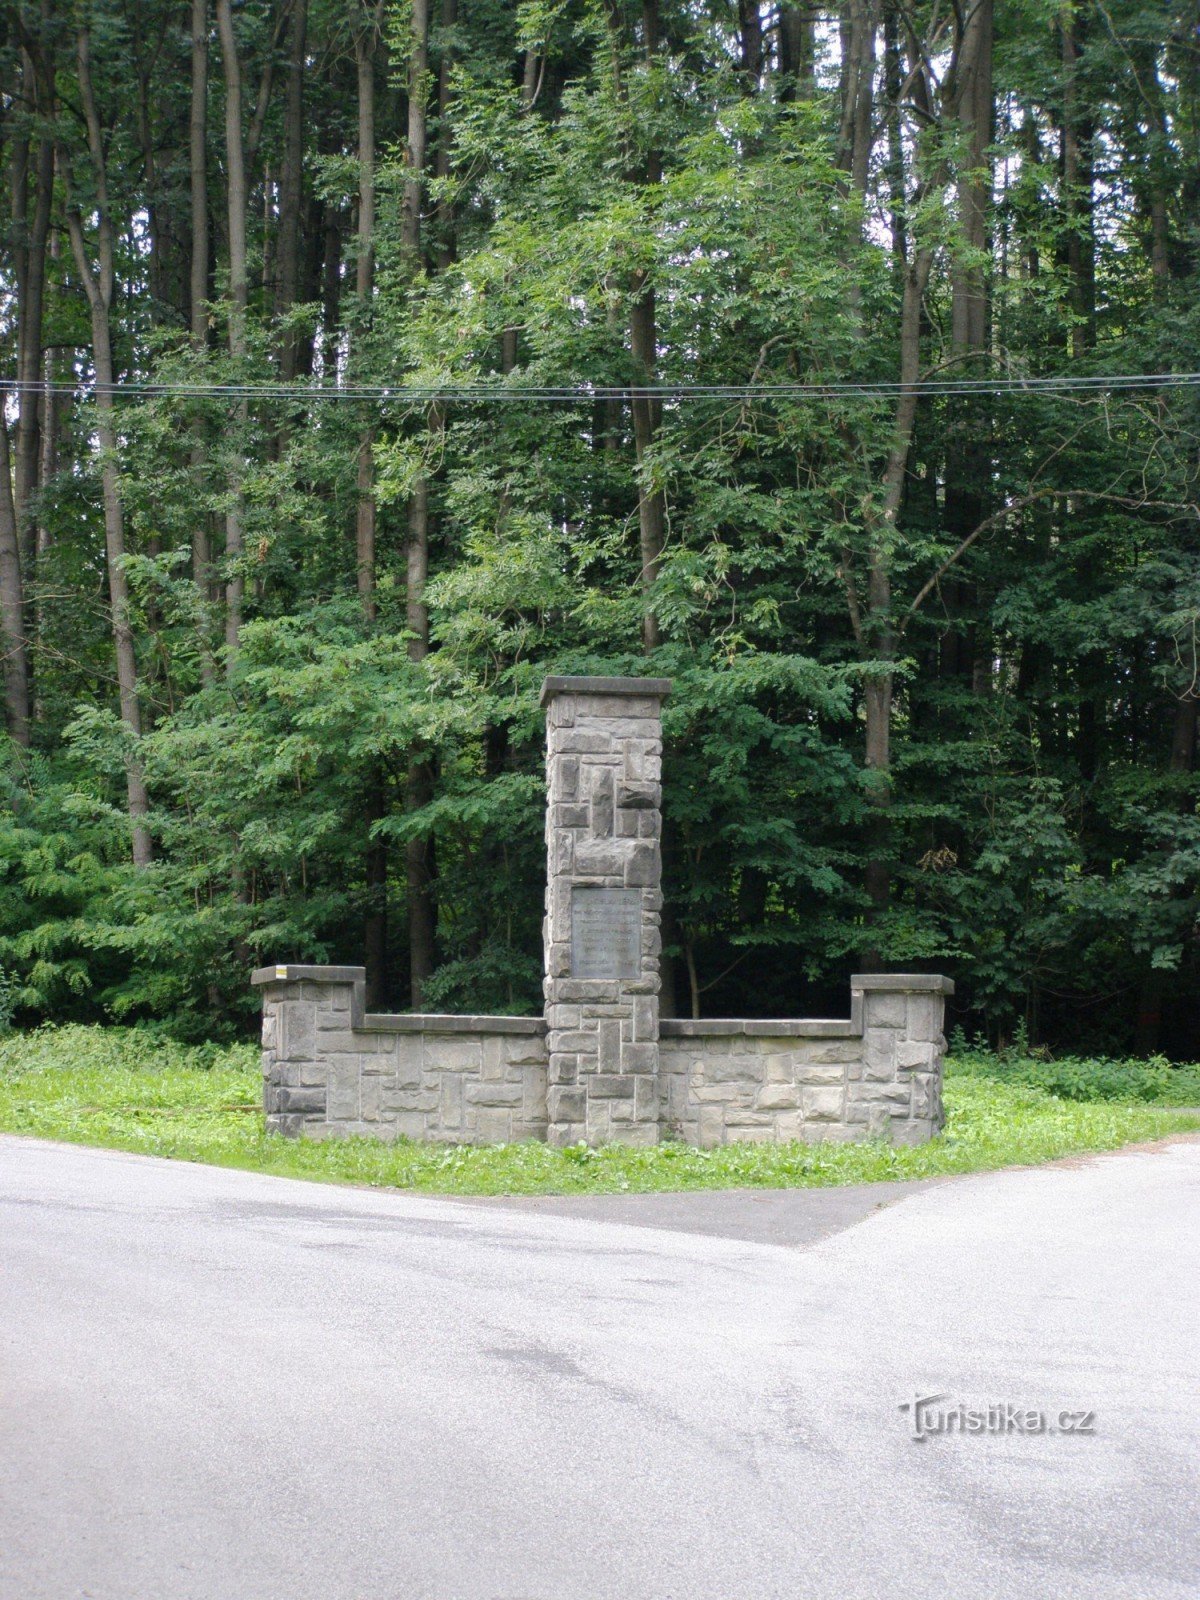 Lepař's monument